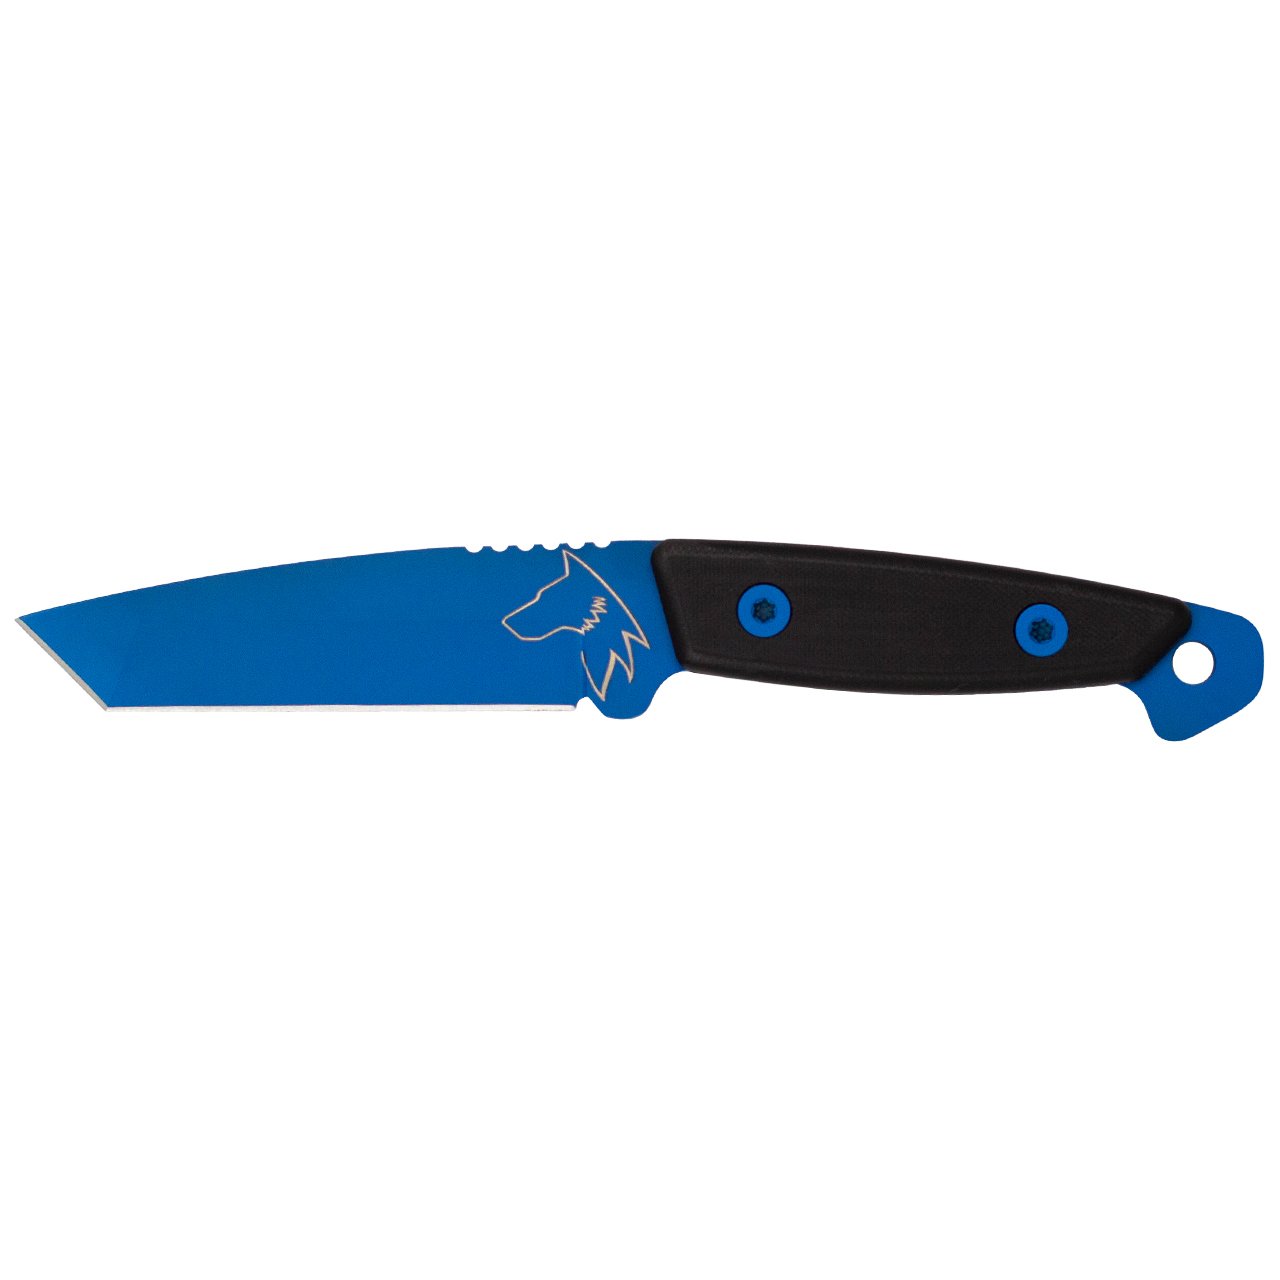 Wolf Tanto - Cubic G10 Black Elcik - Sleipner NRA Blue (Mavi) Bıçak